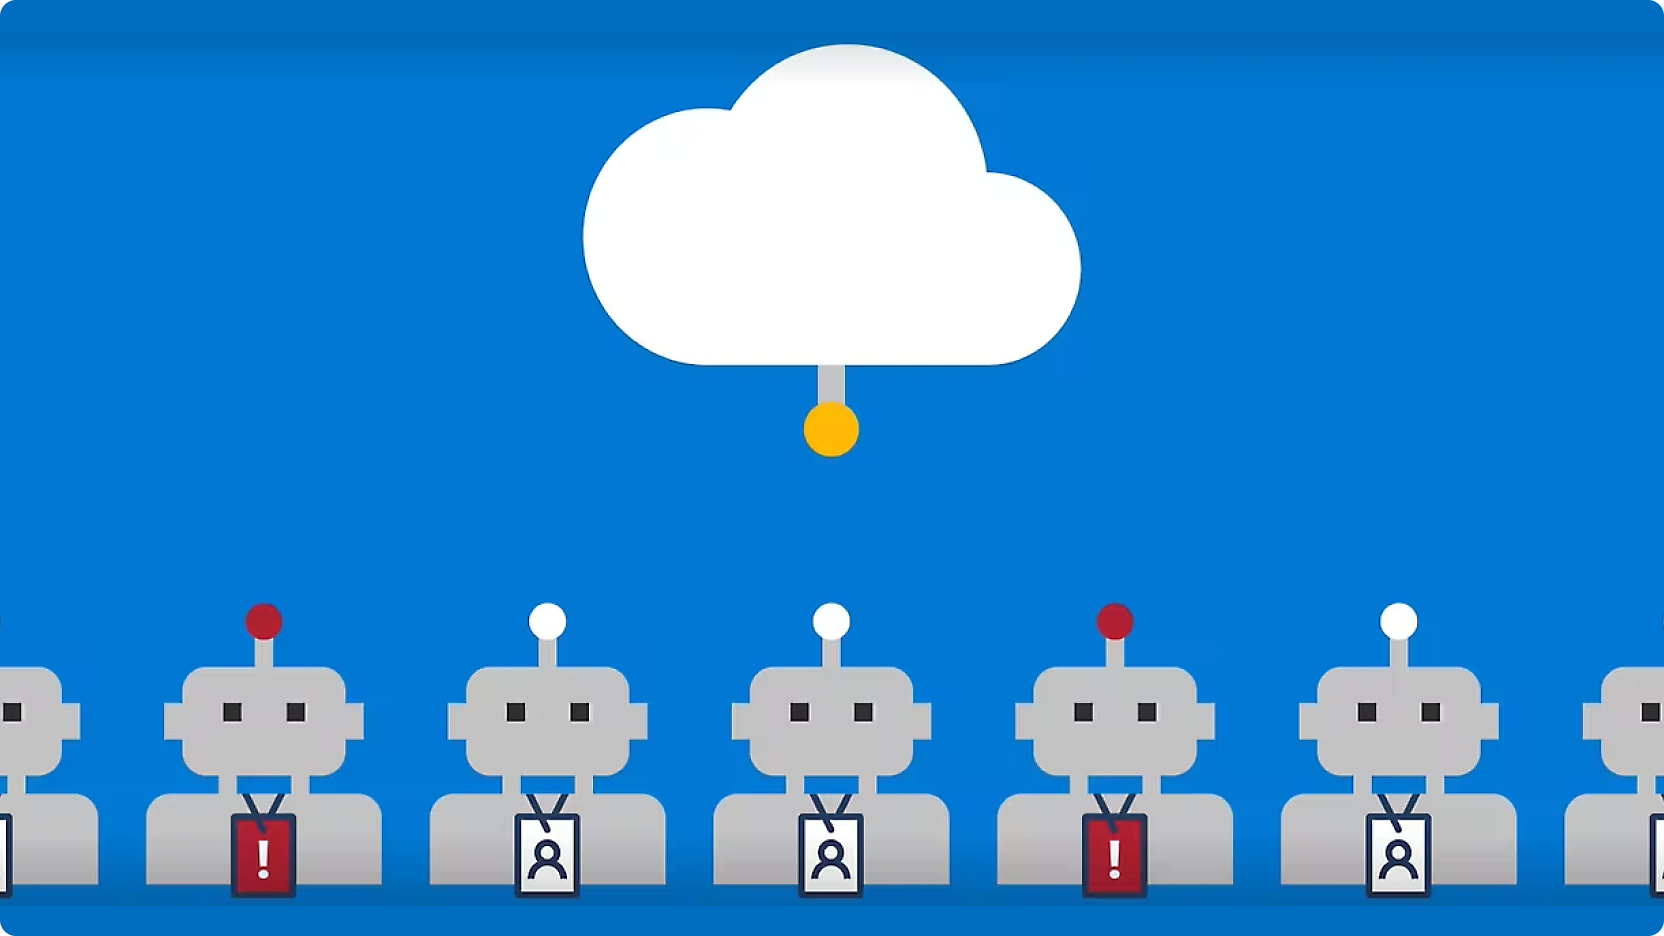 Grafikas, kuriame pavaizduotos eilės robotų su raudonais mygtukais ant galvų, linijomis sujungtų su centriniu debesimi